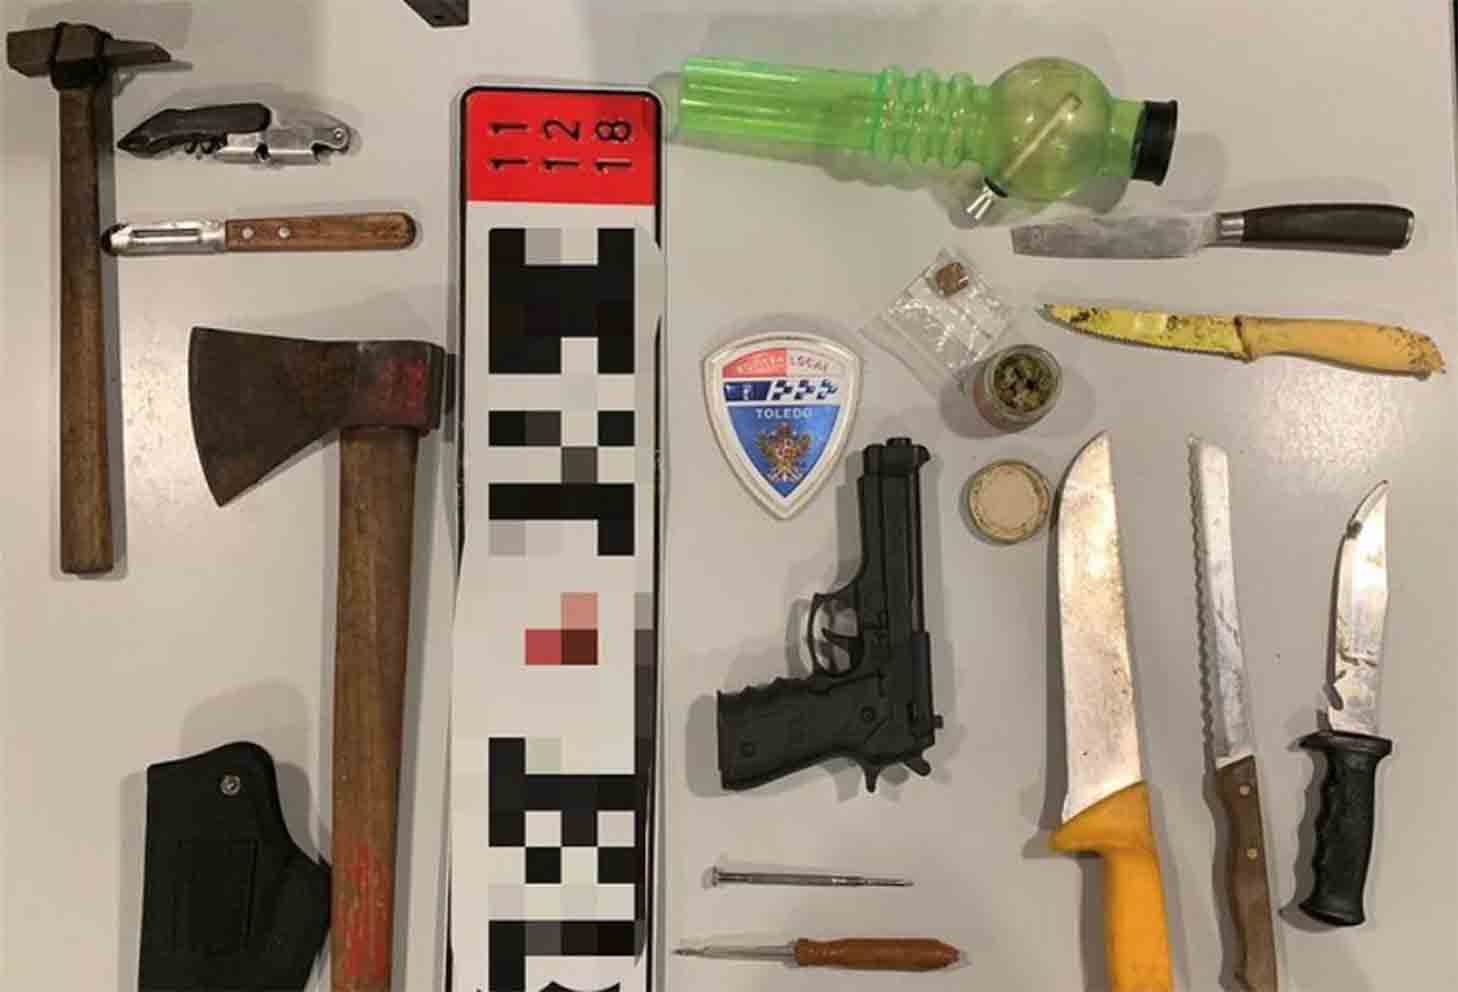 Droga, armas, herramientas... Todos estos objetos llevaba en un coche un hombre en Toledo.